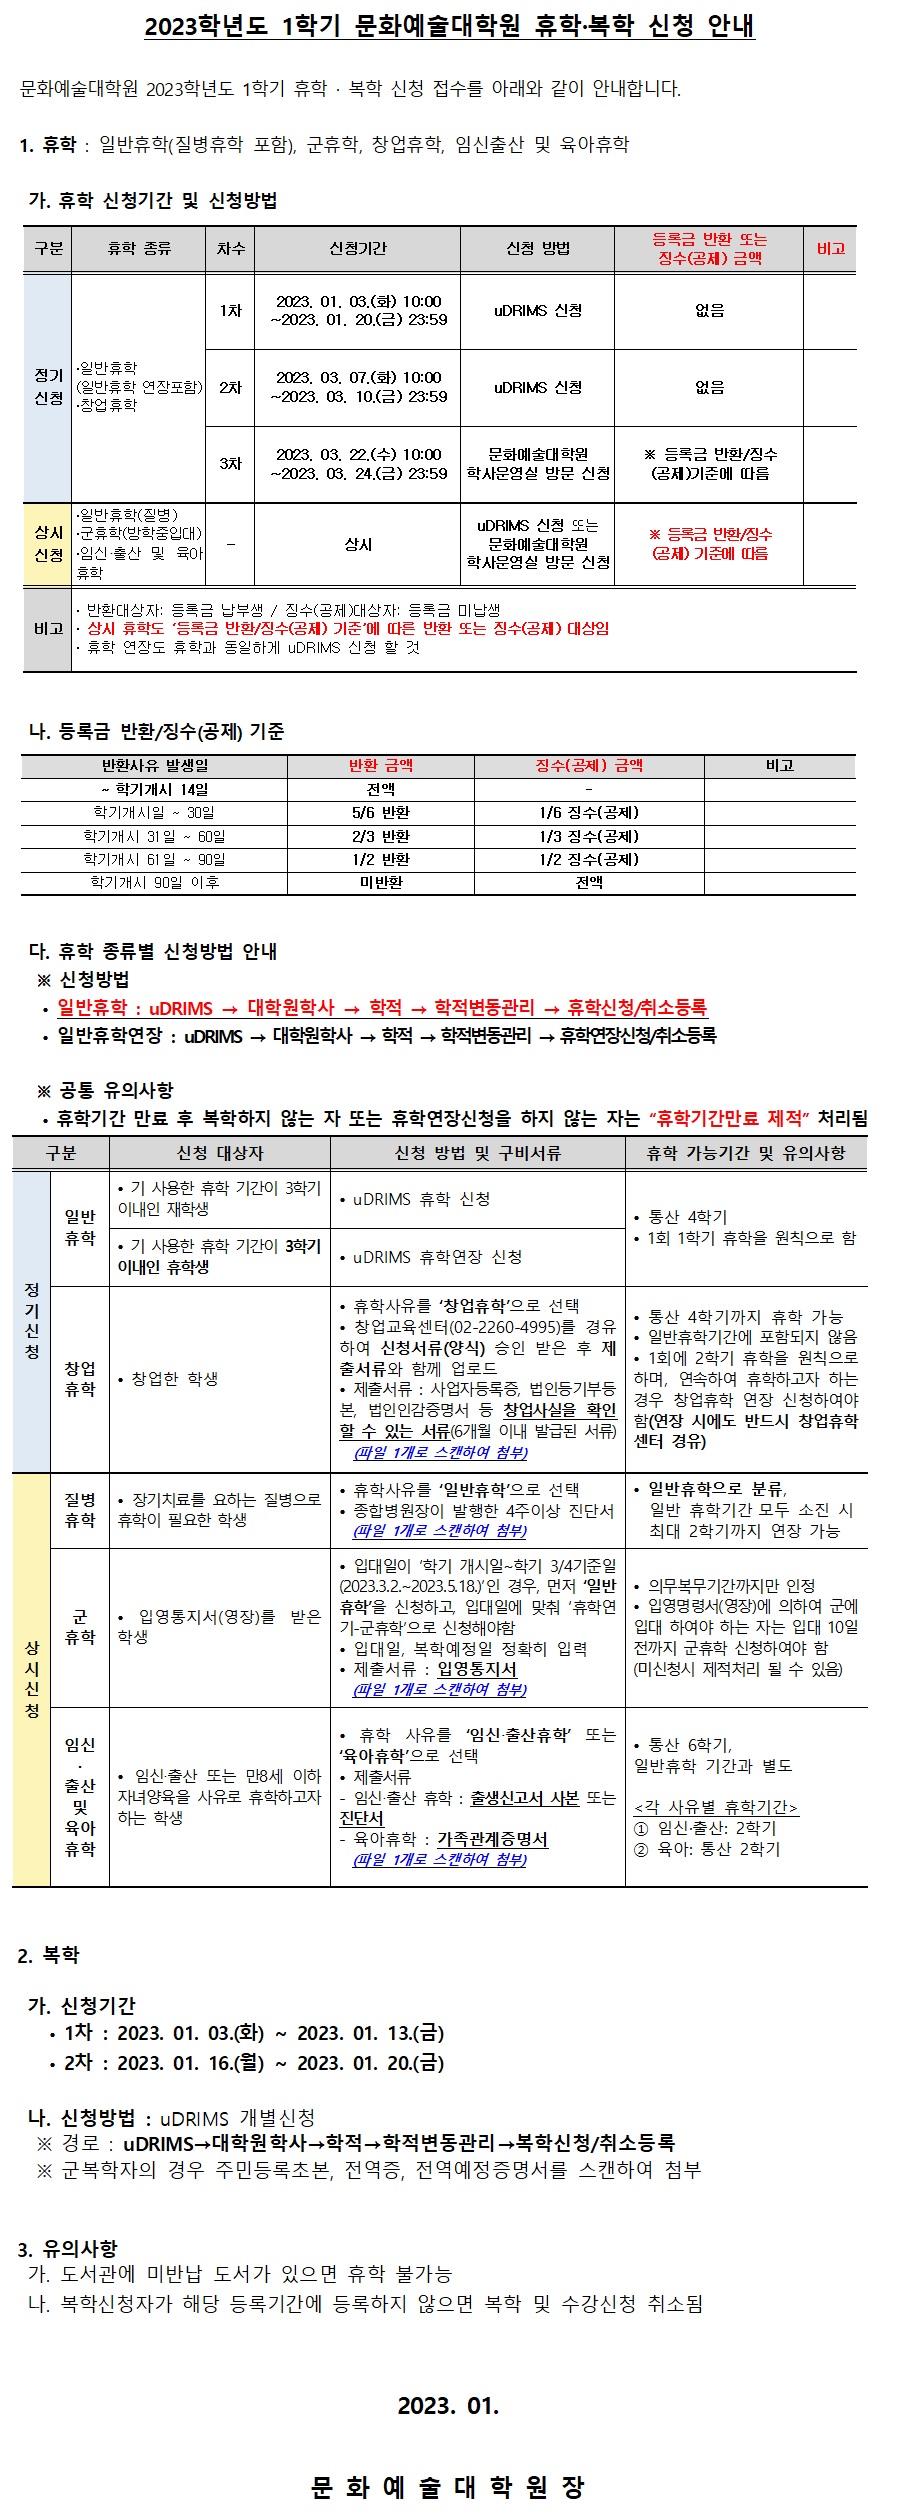 23-1학기 휴복학 안내문